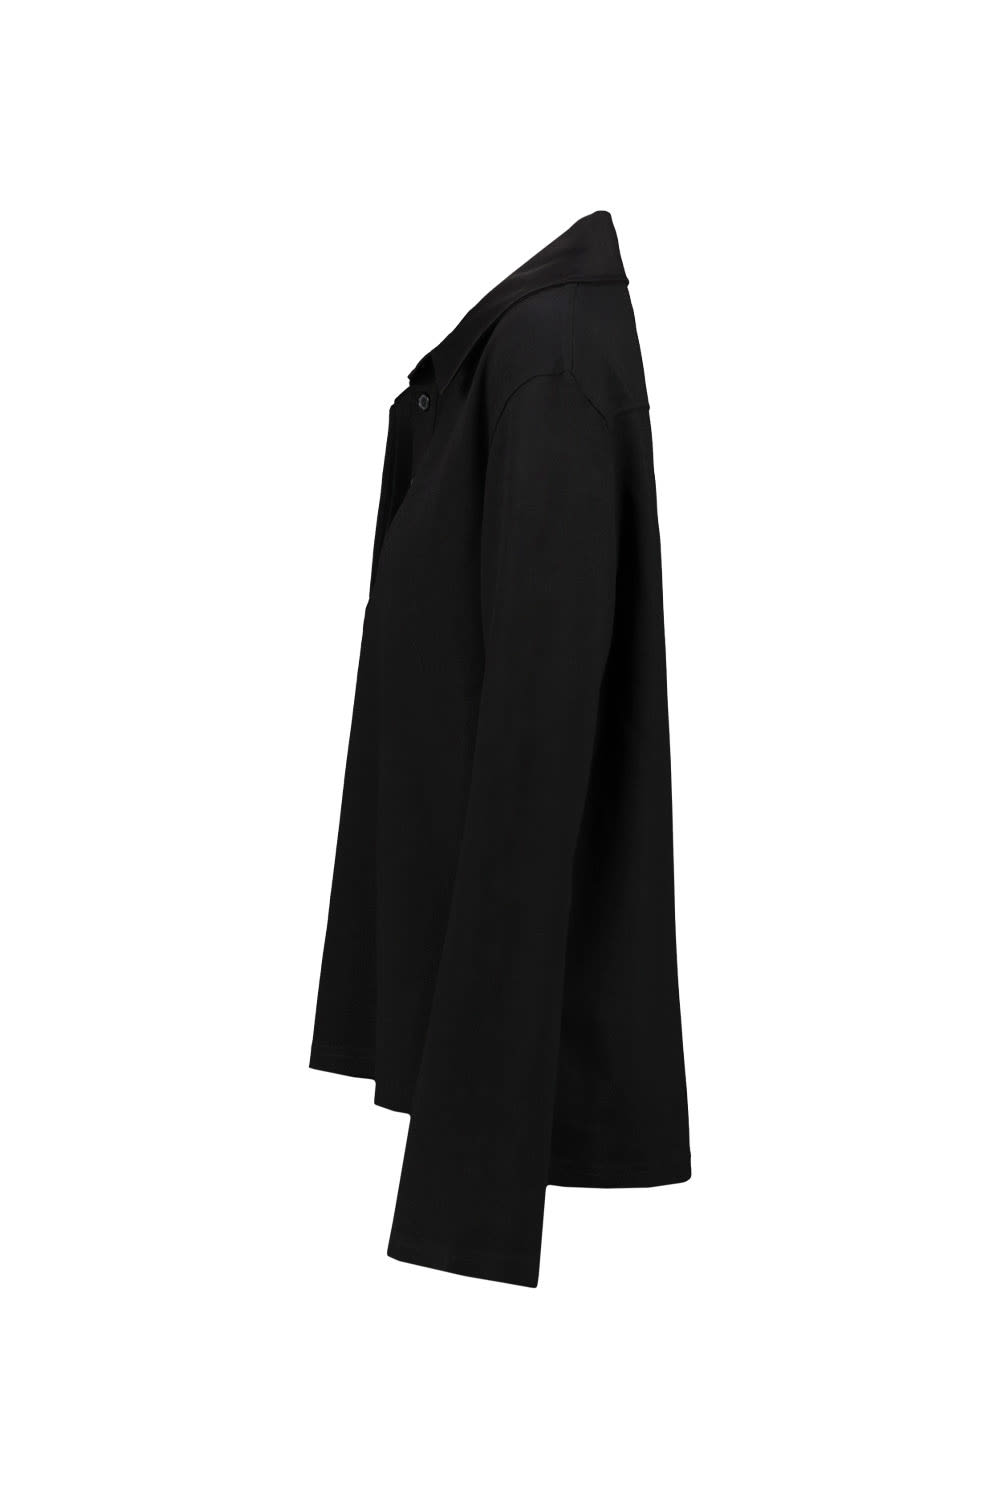 Shop Courrèges Piqué Polo Shirt In Black